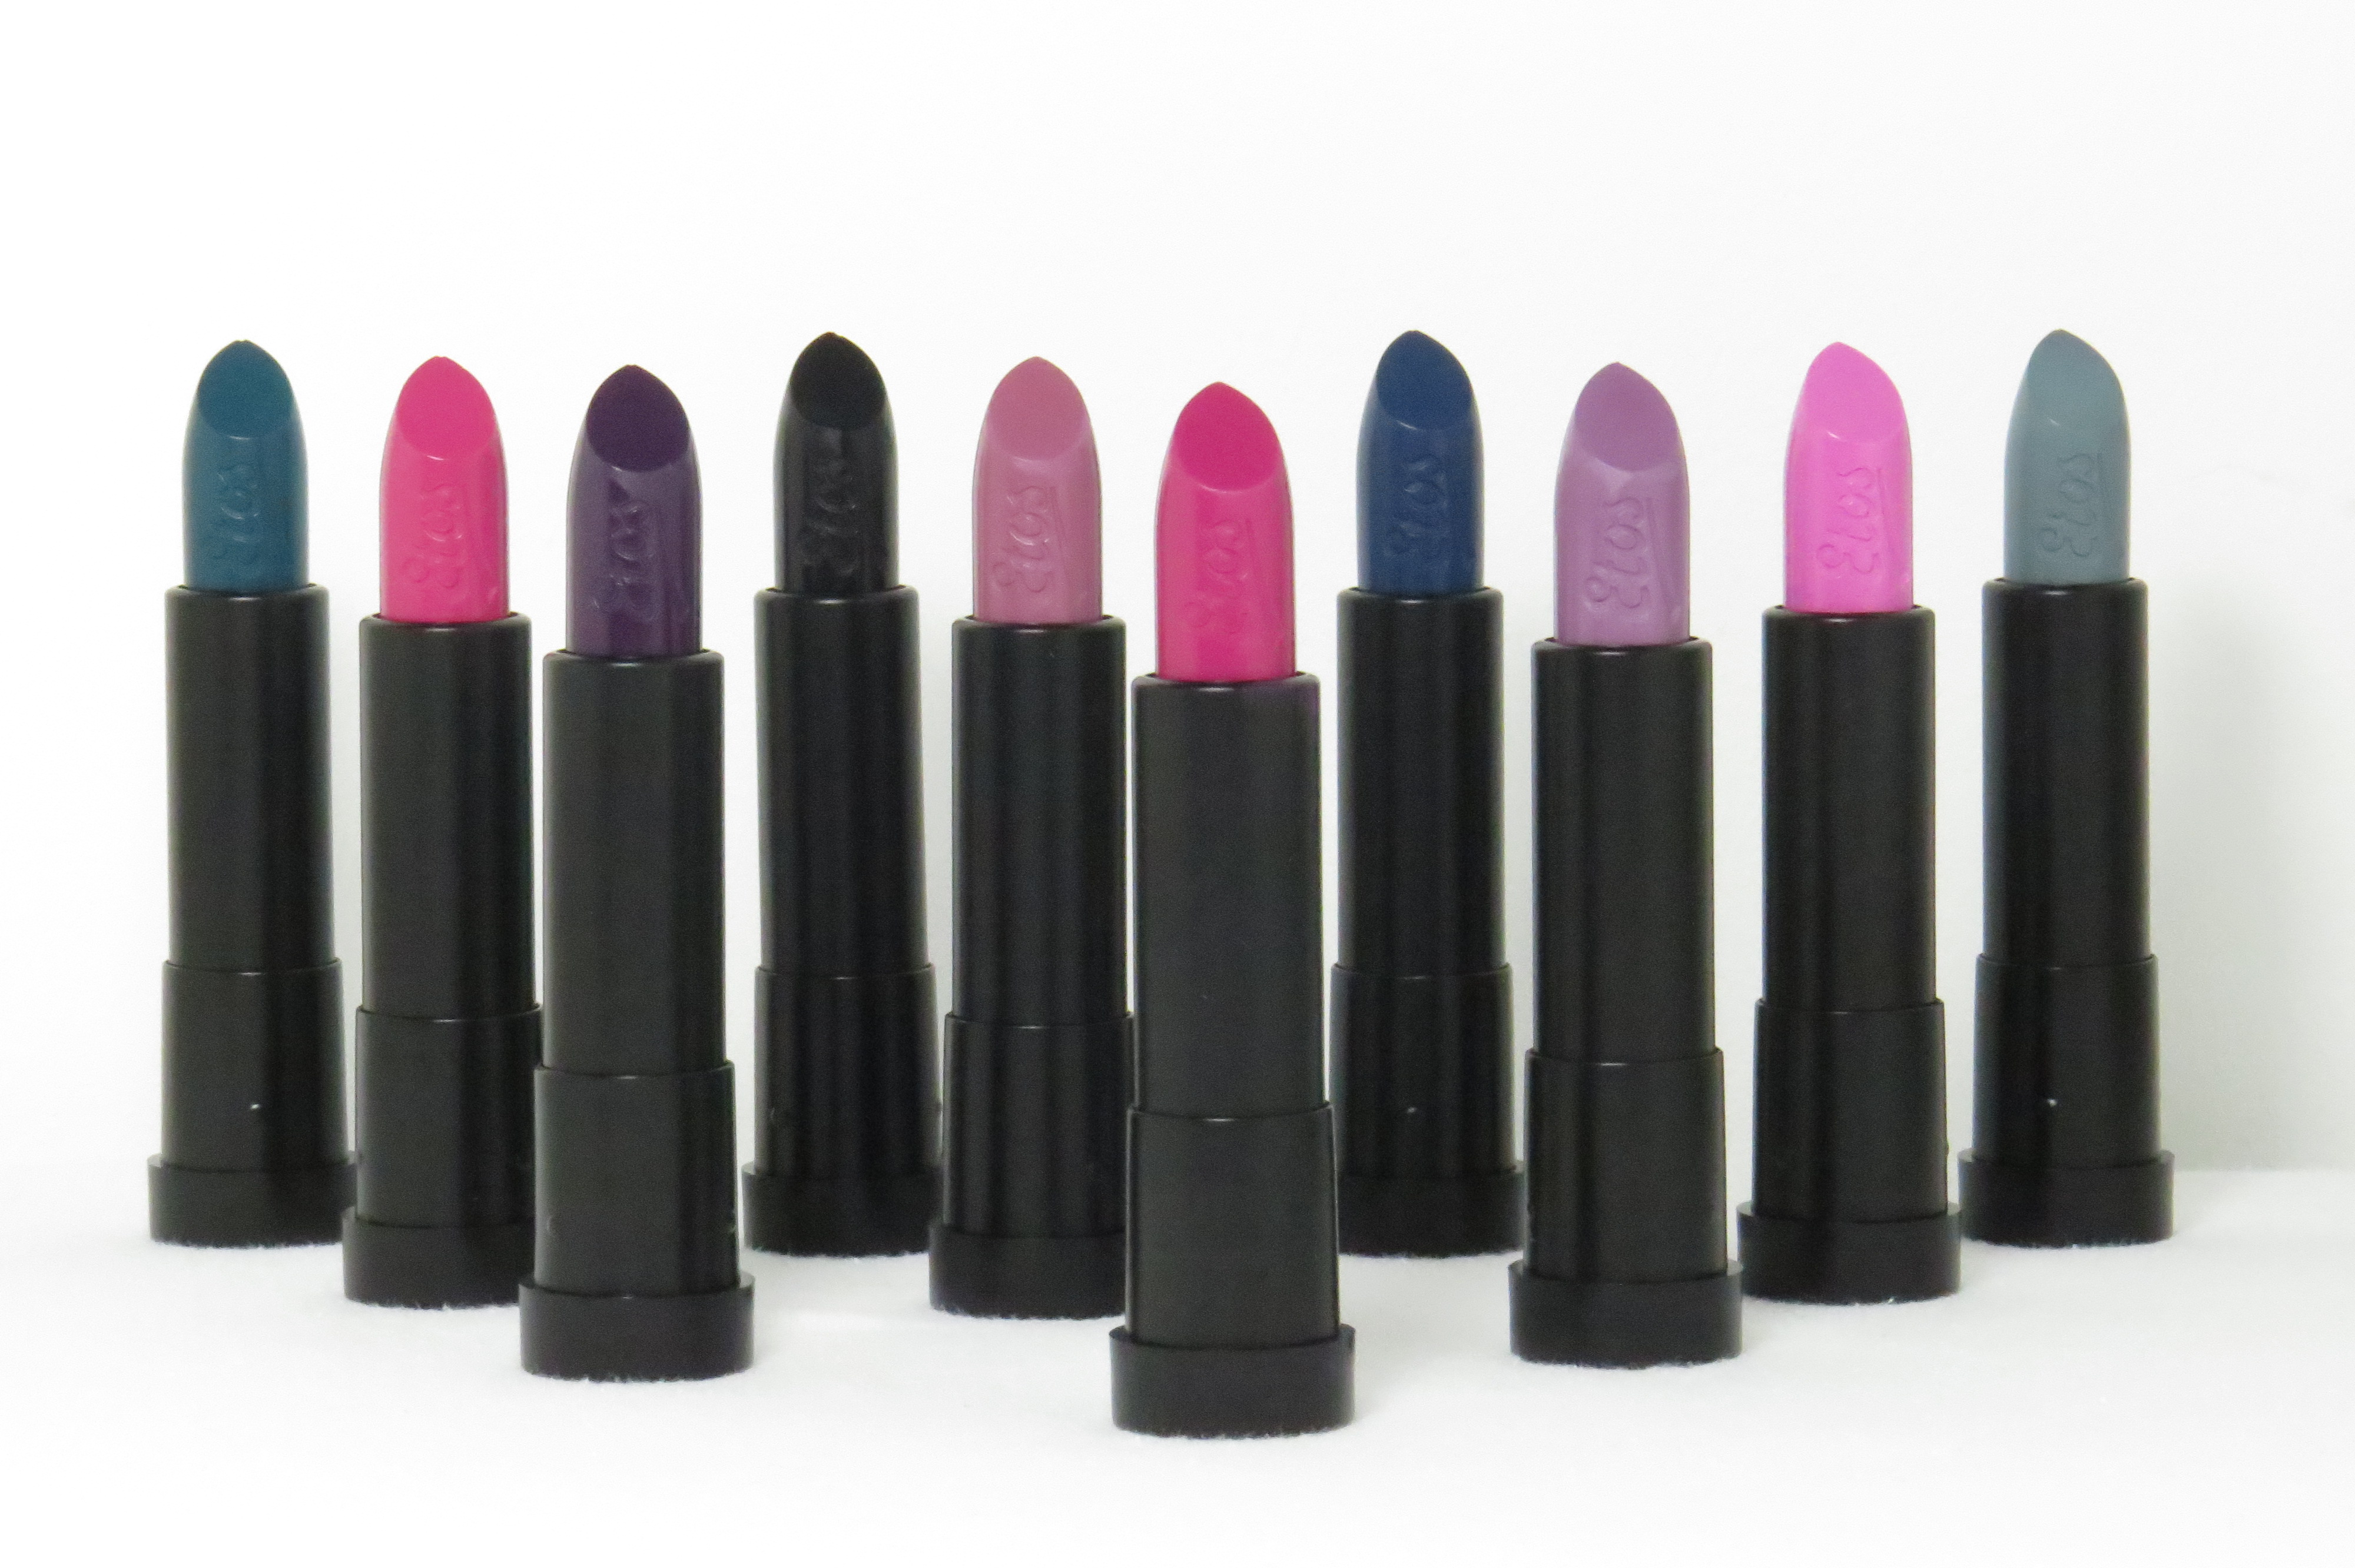 Etos Color Care lipsticks in 10 nieuwe kleuren